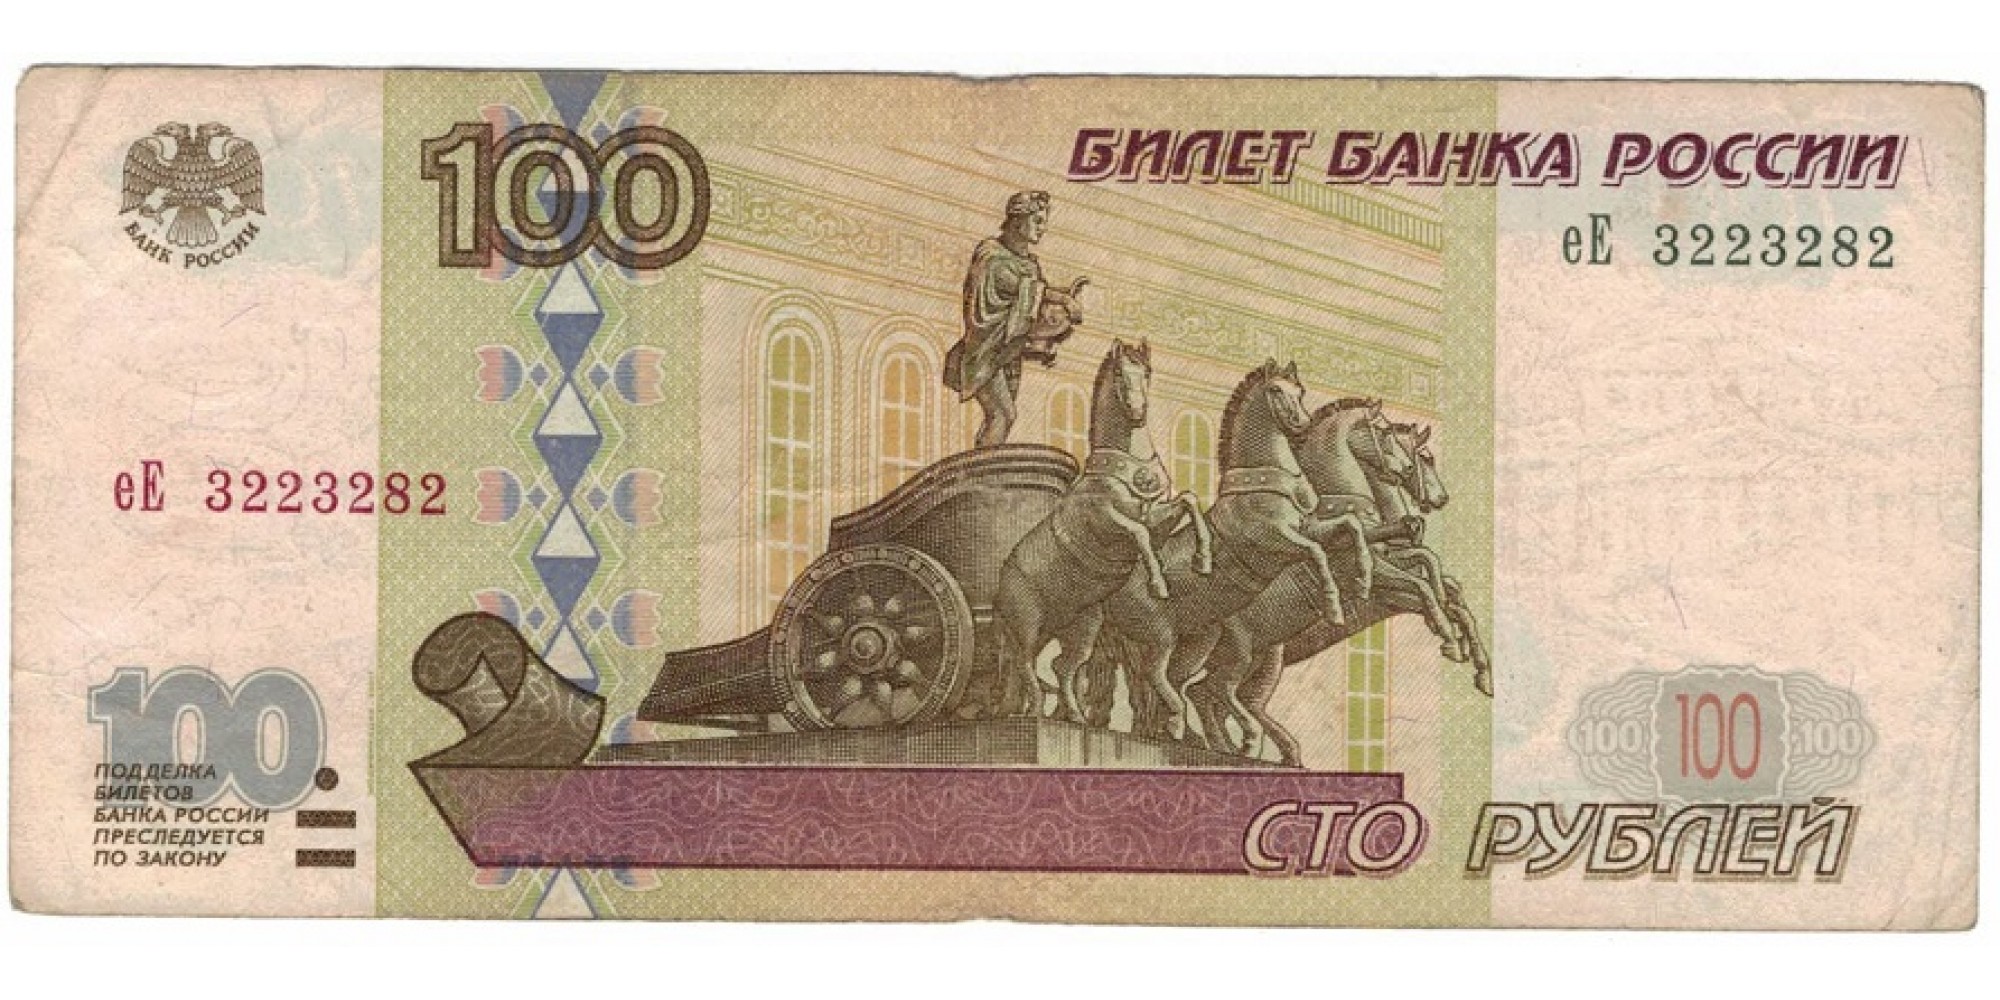 Россия 100 рублей 1997 год модификация 2001 год серия еЕ 3223282